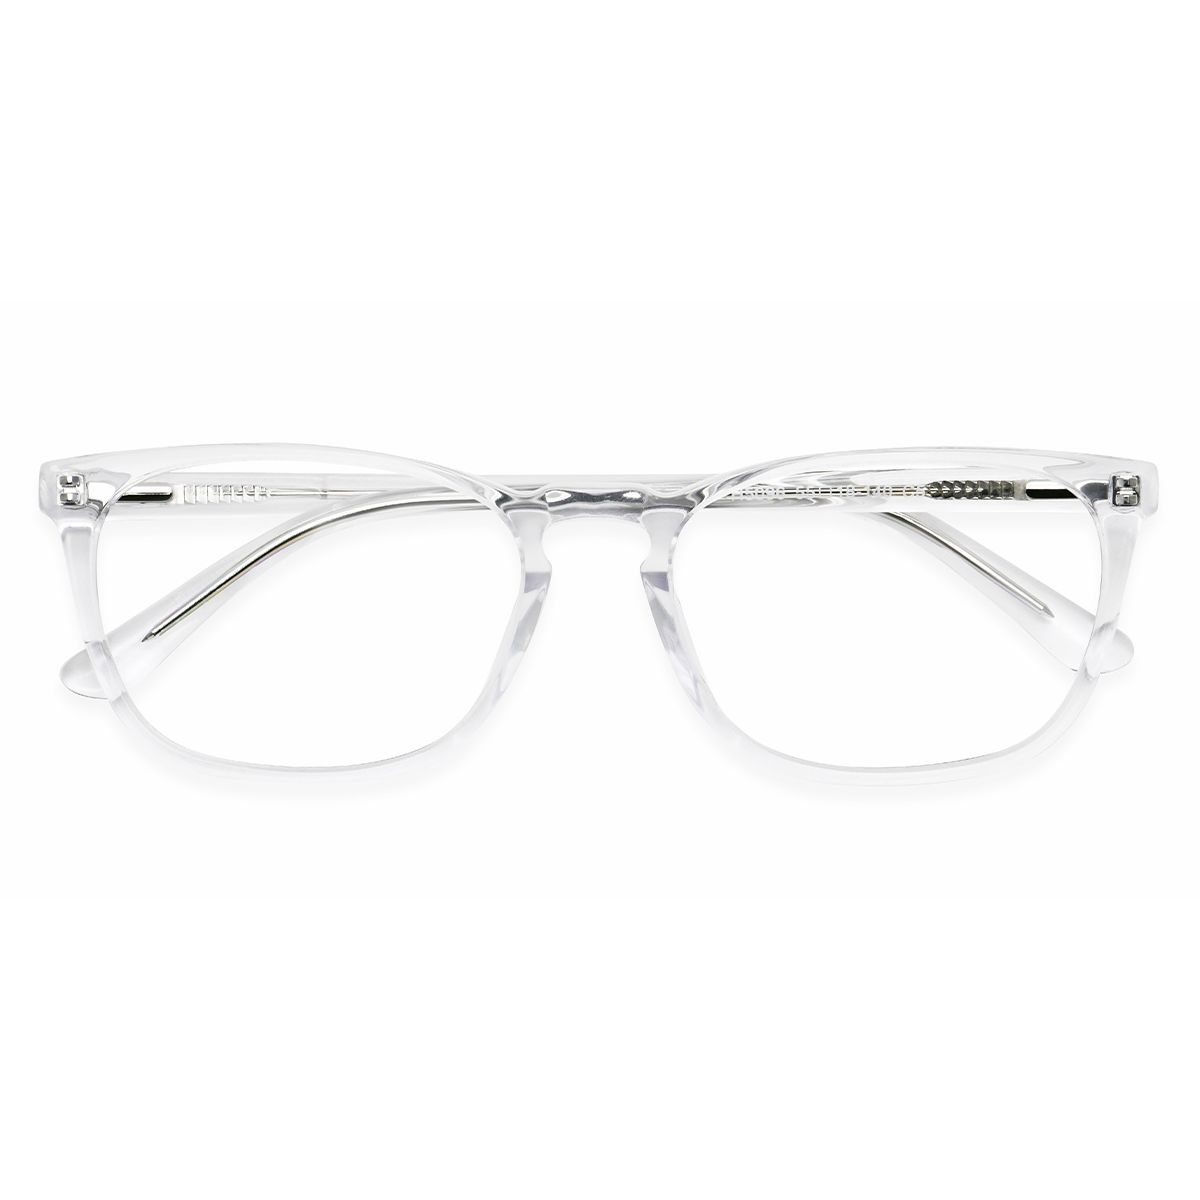 H5096 Oval Clear Eyeglasses Frames | Leoptique